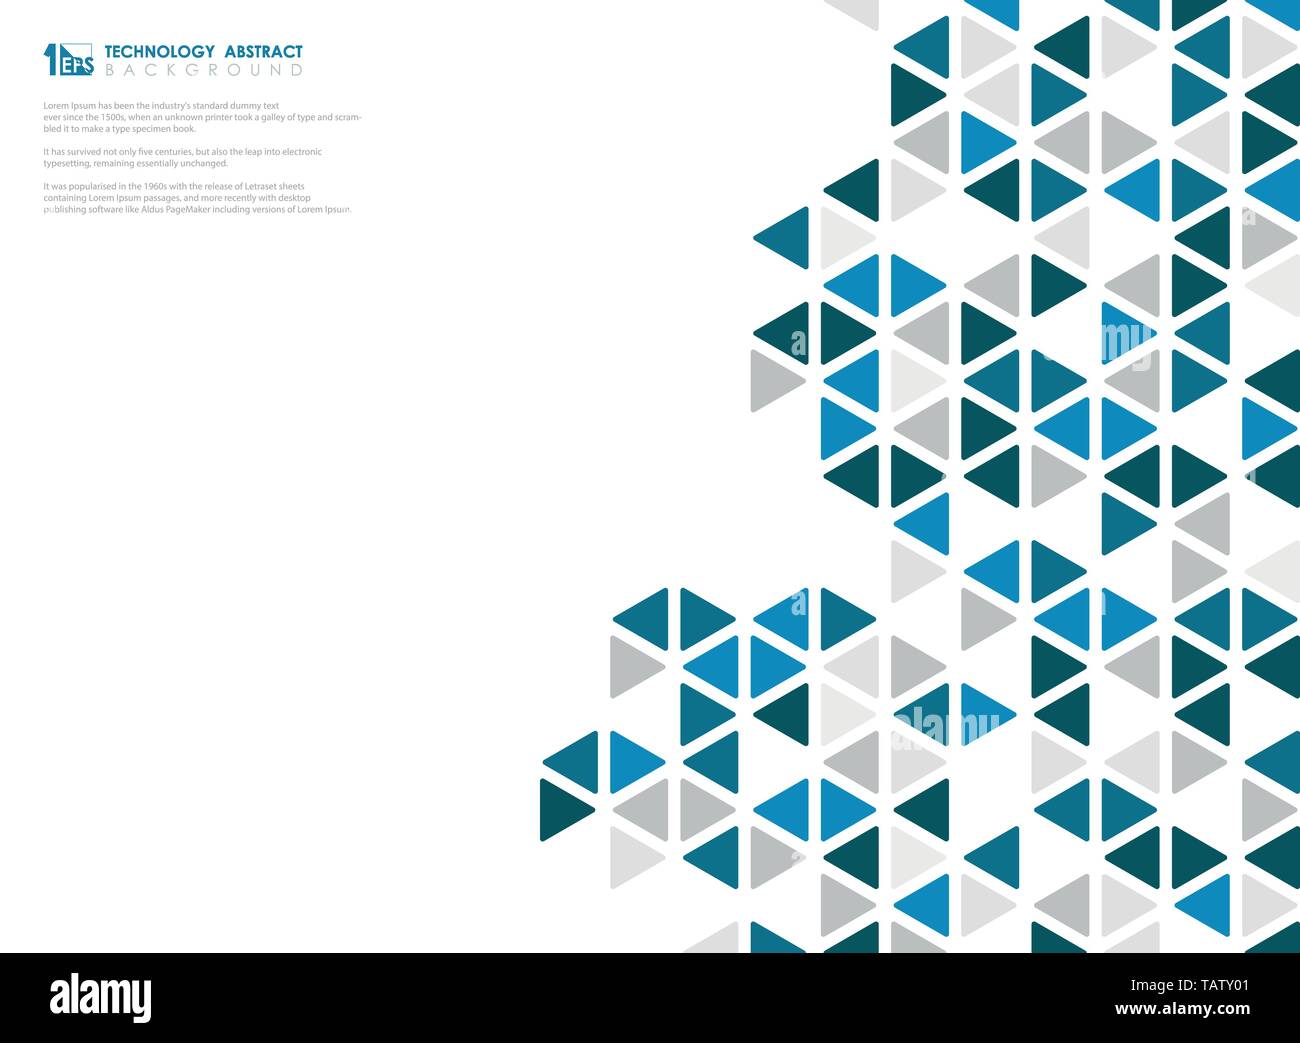 Abstrakt Blau Würfel der geometrischen sechseckige Niedrige pattern Design Technologie. Sie können für die Anzeige, Plakat, Cover Design, Präsentation, Grafik verwenden. Abbildung Stock Vektor